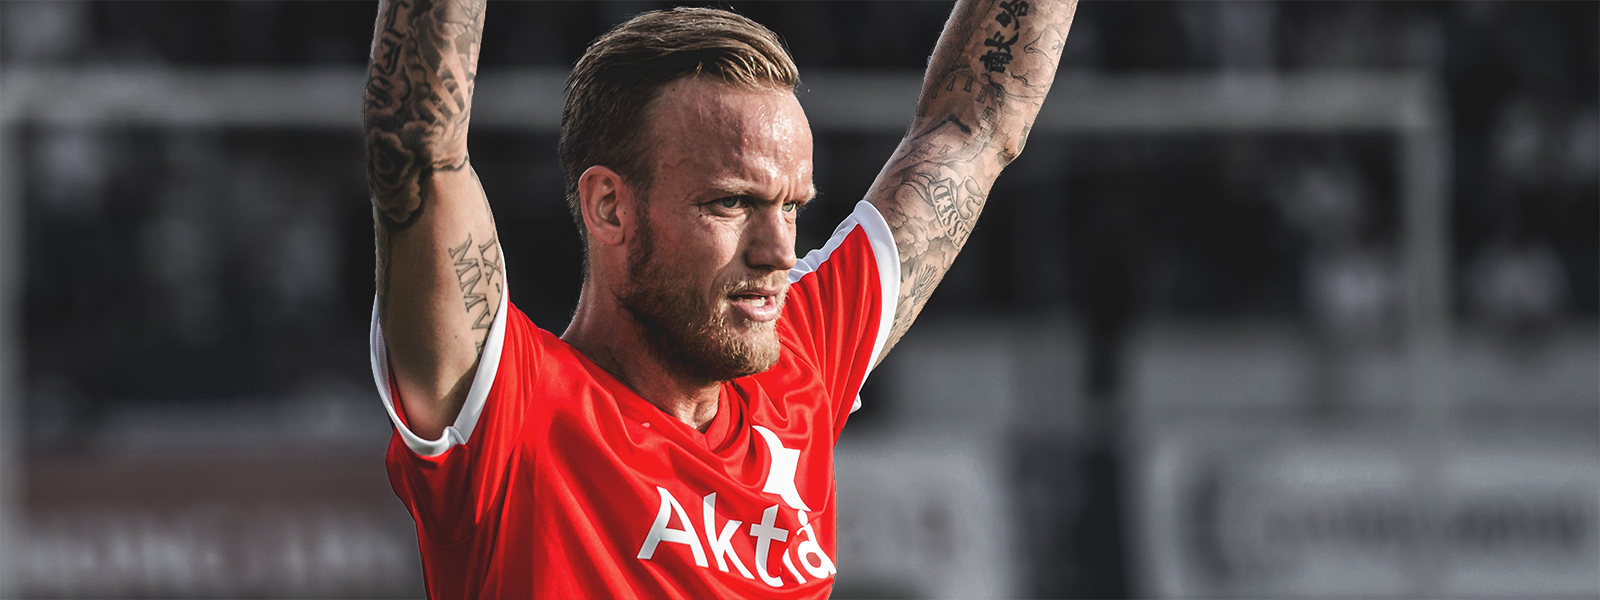 Mika Väyrynen on nauttinut ajastaan IFK:ssa: <br> ”Tänään laitetaan itsemme likoon isolla sydämellä”